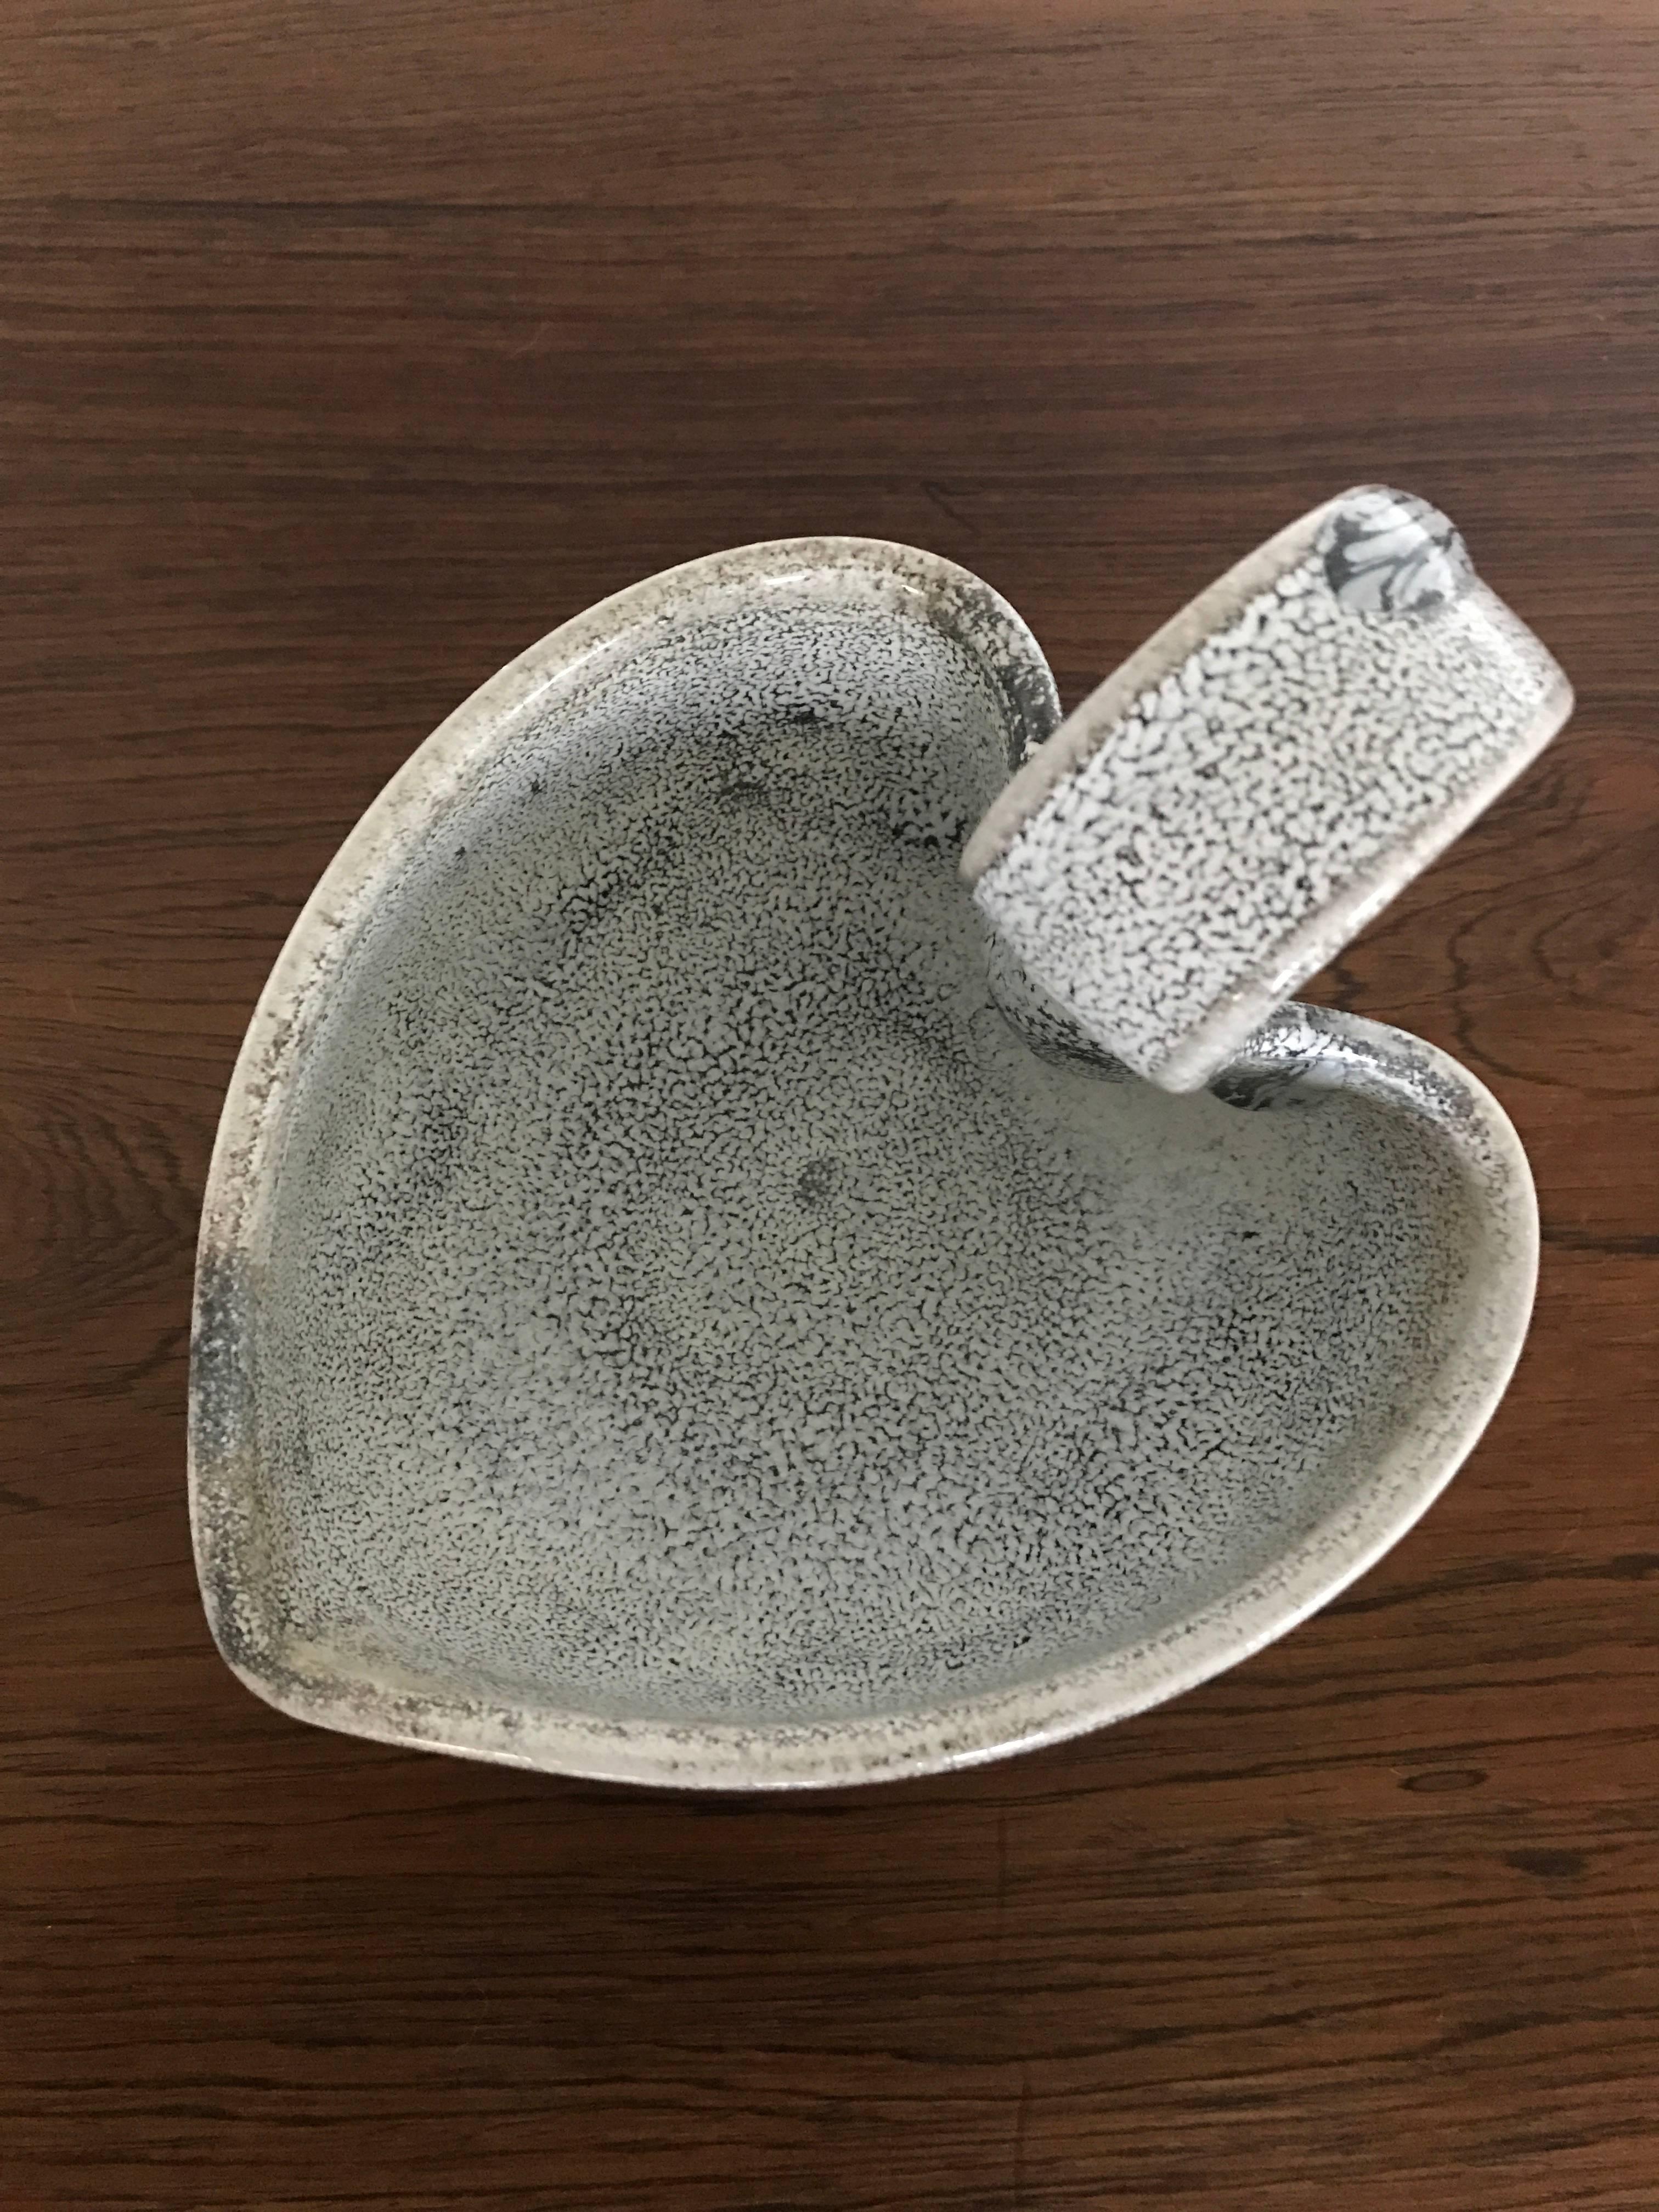 Danish Glazed Stoneware Bowl from Kähler, Designed by Svend Hammershøi, 1930s, Denmark